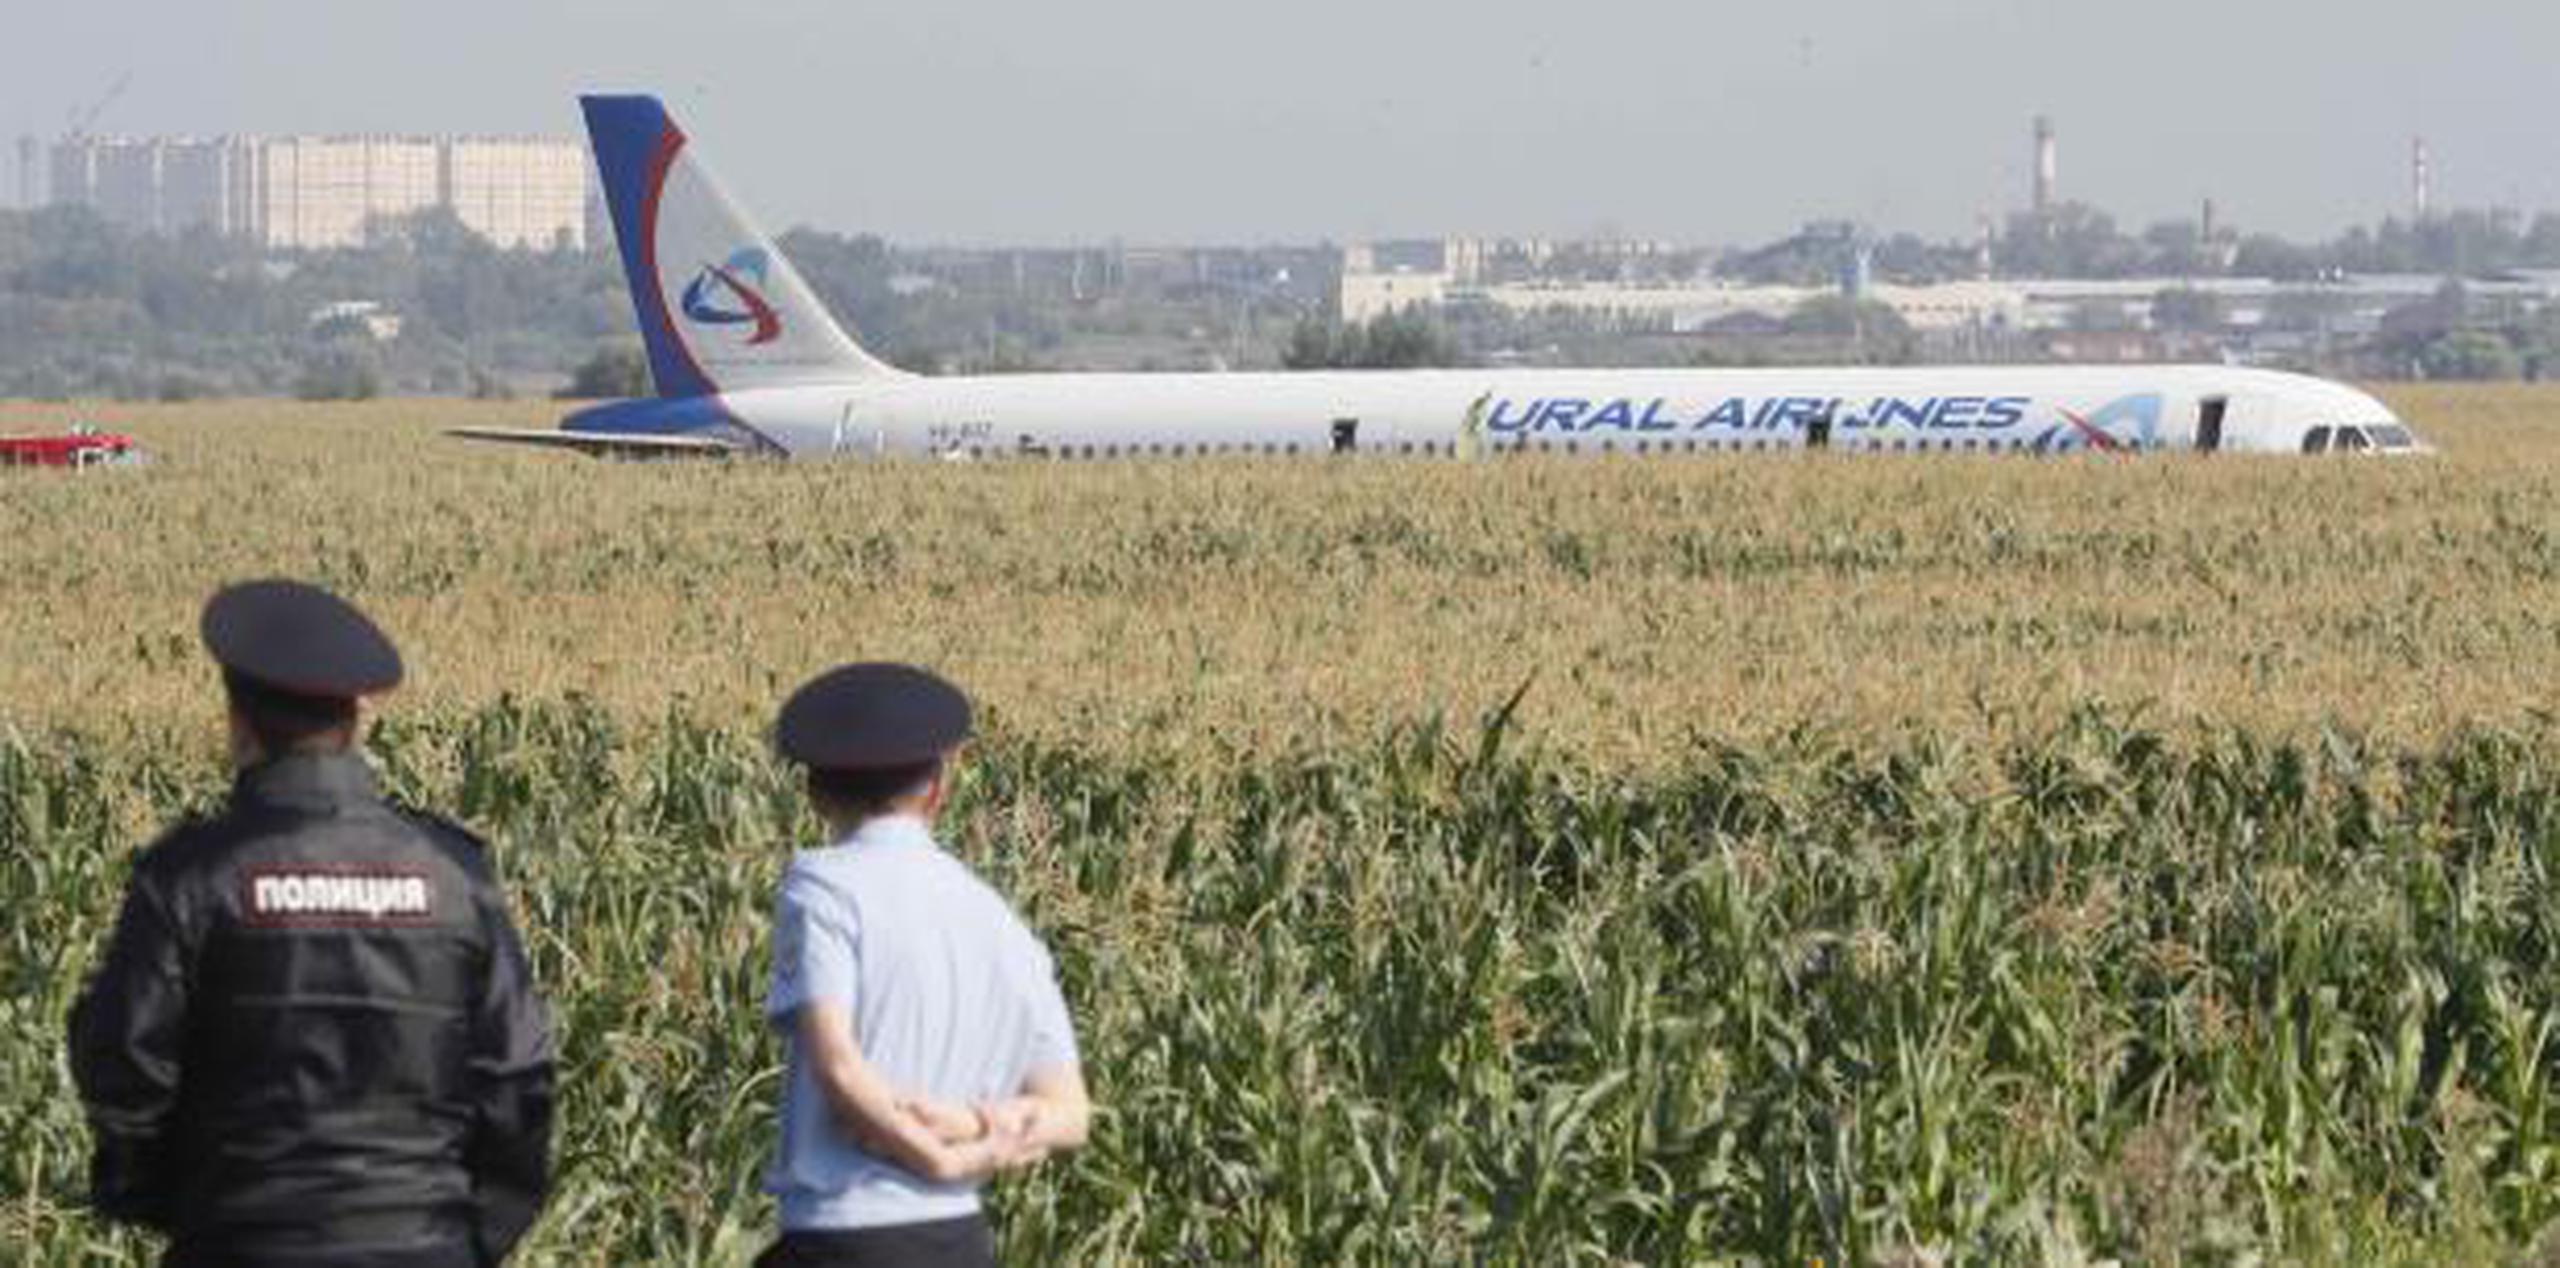 El avión chocó con una bandada de pájaros al despegar del aeropuerto. (EFE / EPA / Sergei Ilnitsky)